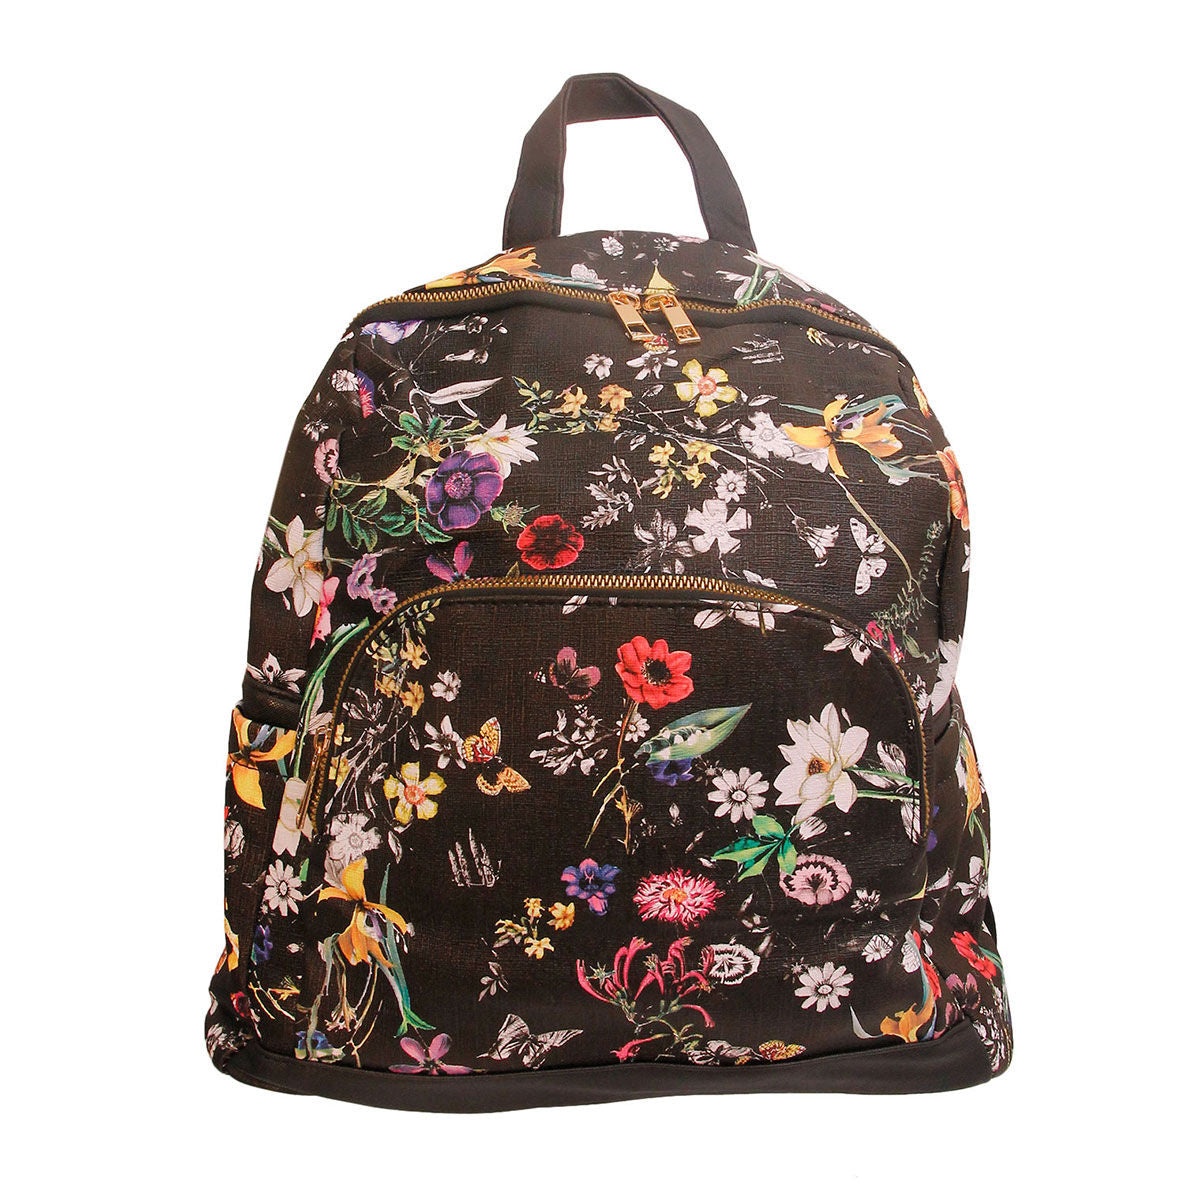 Black Leather Floral Backpack